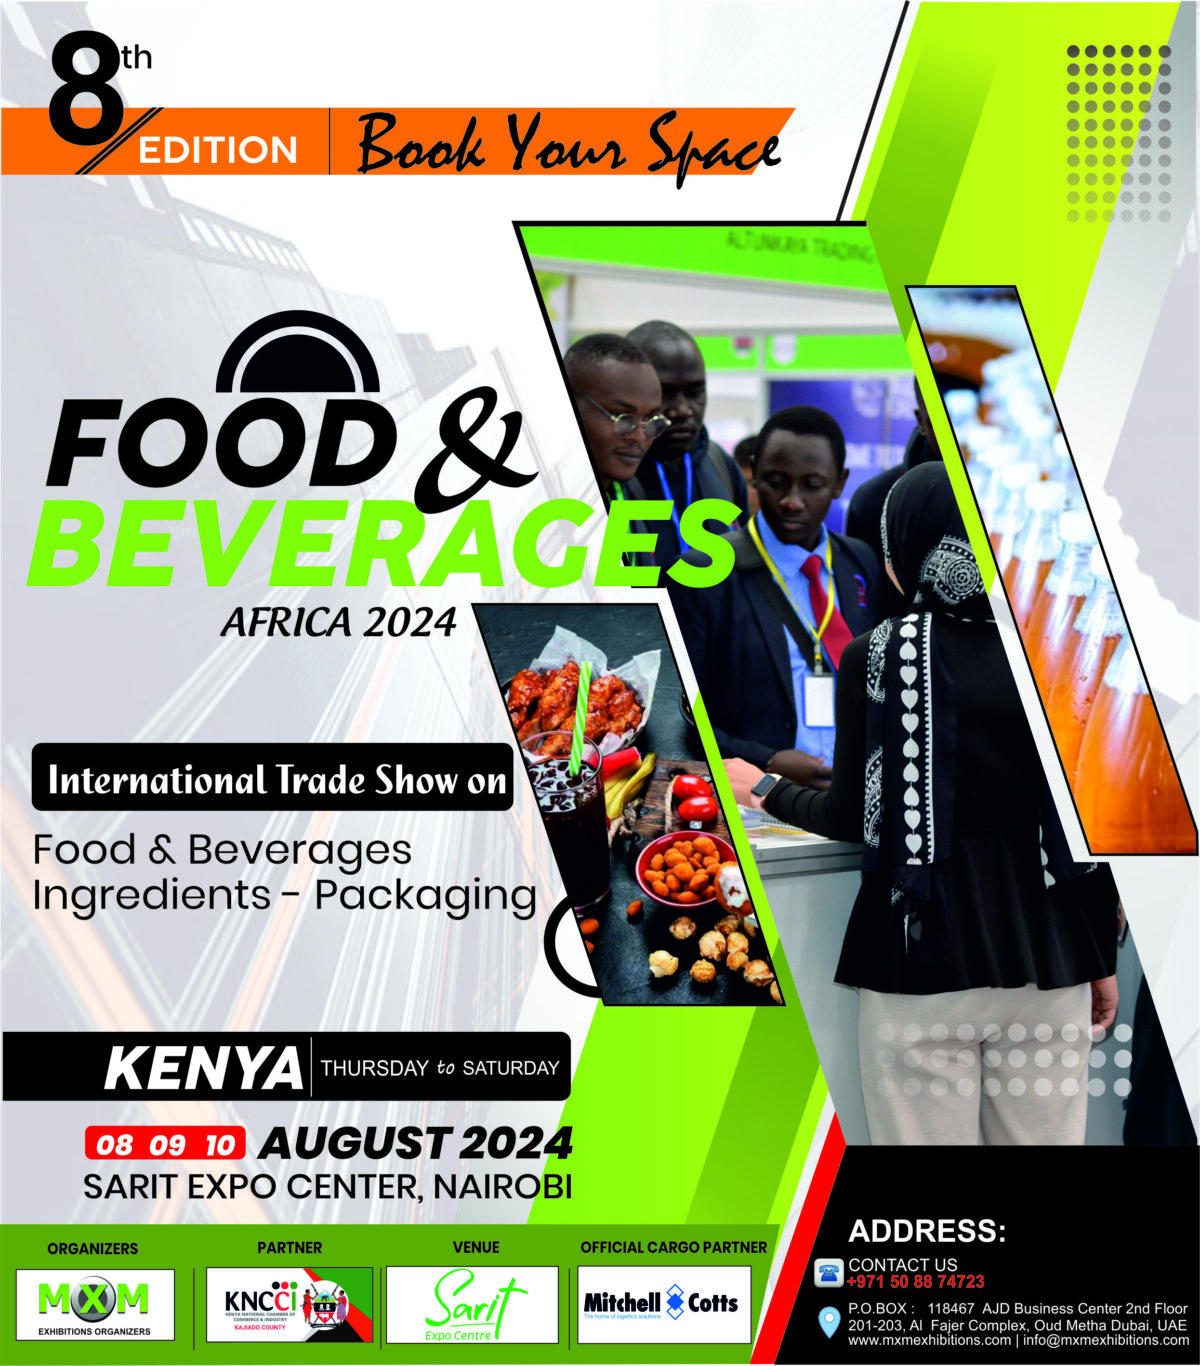 Food & Beverages Africa 2024